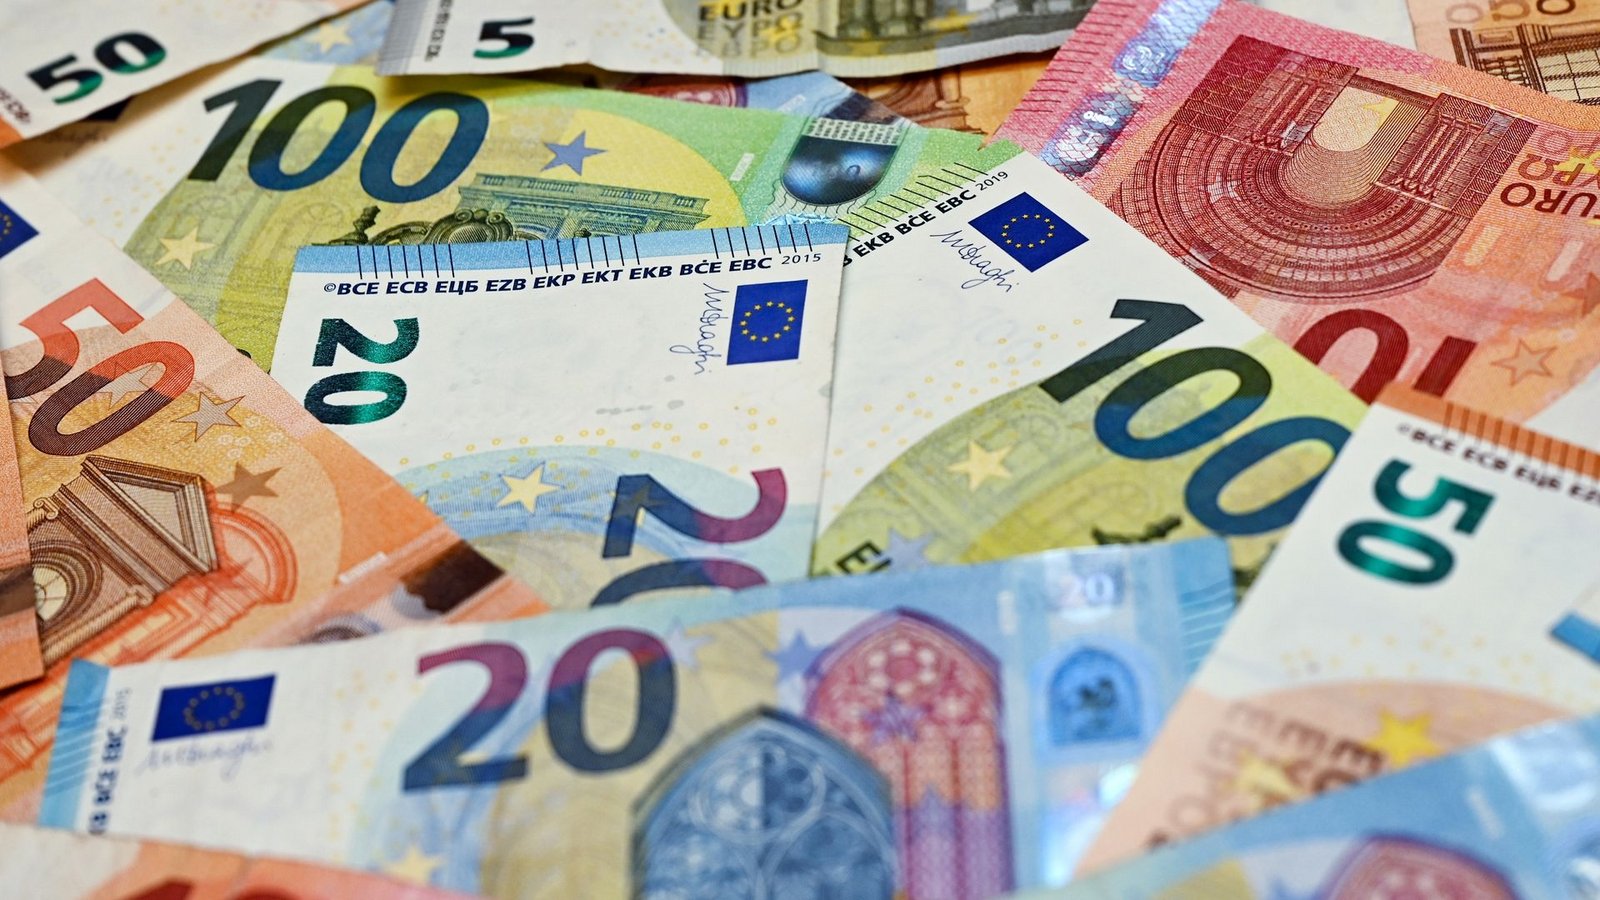 Der Euro ist immer weniger wert, die Teuerungsrate stagniert auf hohem Niveau.Foto: Patrick Pleul/dpa-Zentralbild/dpa